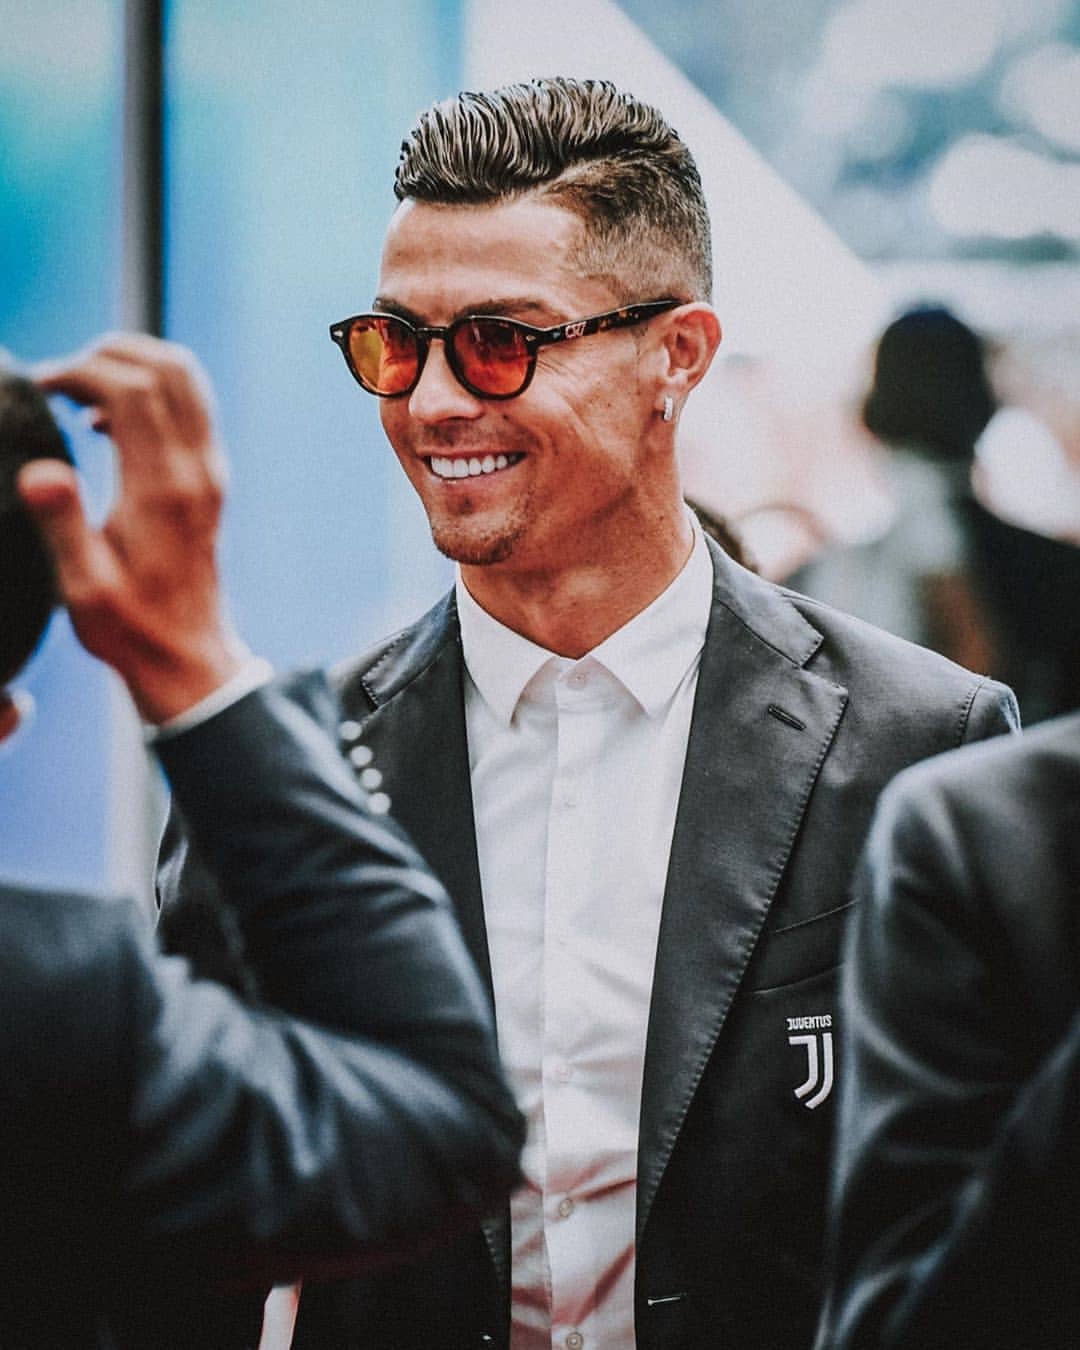 Hãy chiêm ngưỡng bức ảnh siêu cute của Ronaldo khiến bất kỳ ai nhìn vào cũng không thể cưỡng lại được nụ cười.